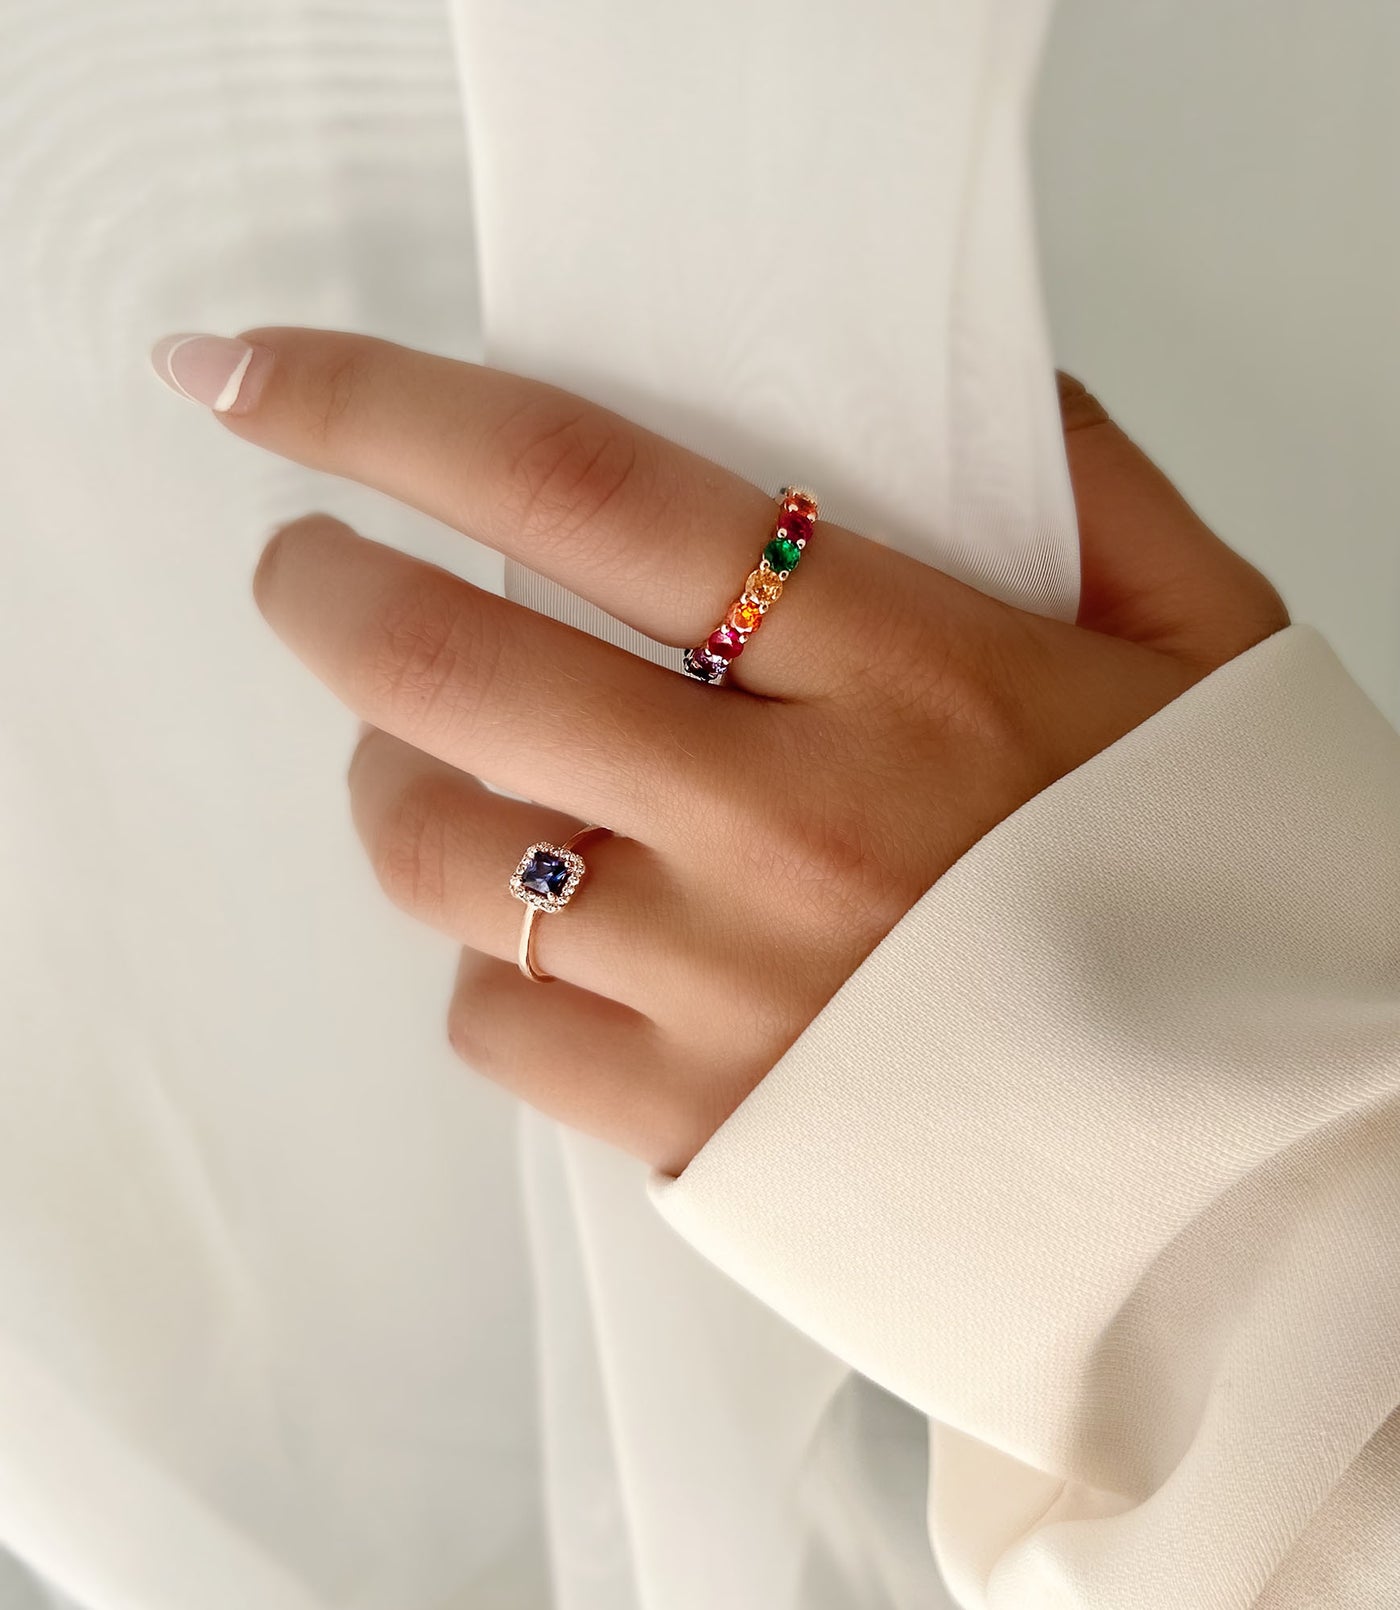 Lulu & Jane Fingerring Ring roségold verziert mit Kristallen von Swarovski®  bunt, Verziert mit Kristallen von Swarovski®